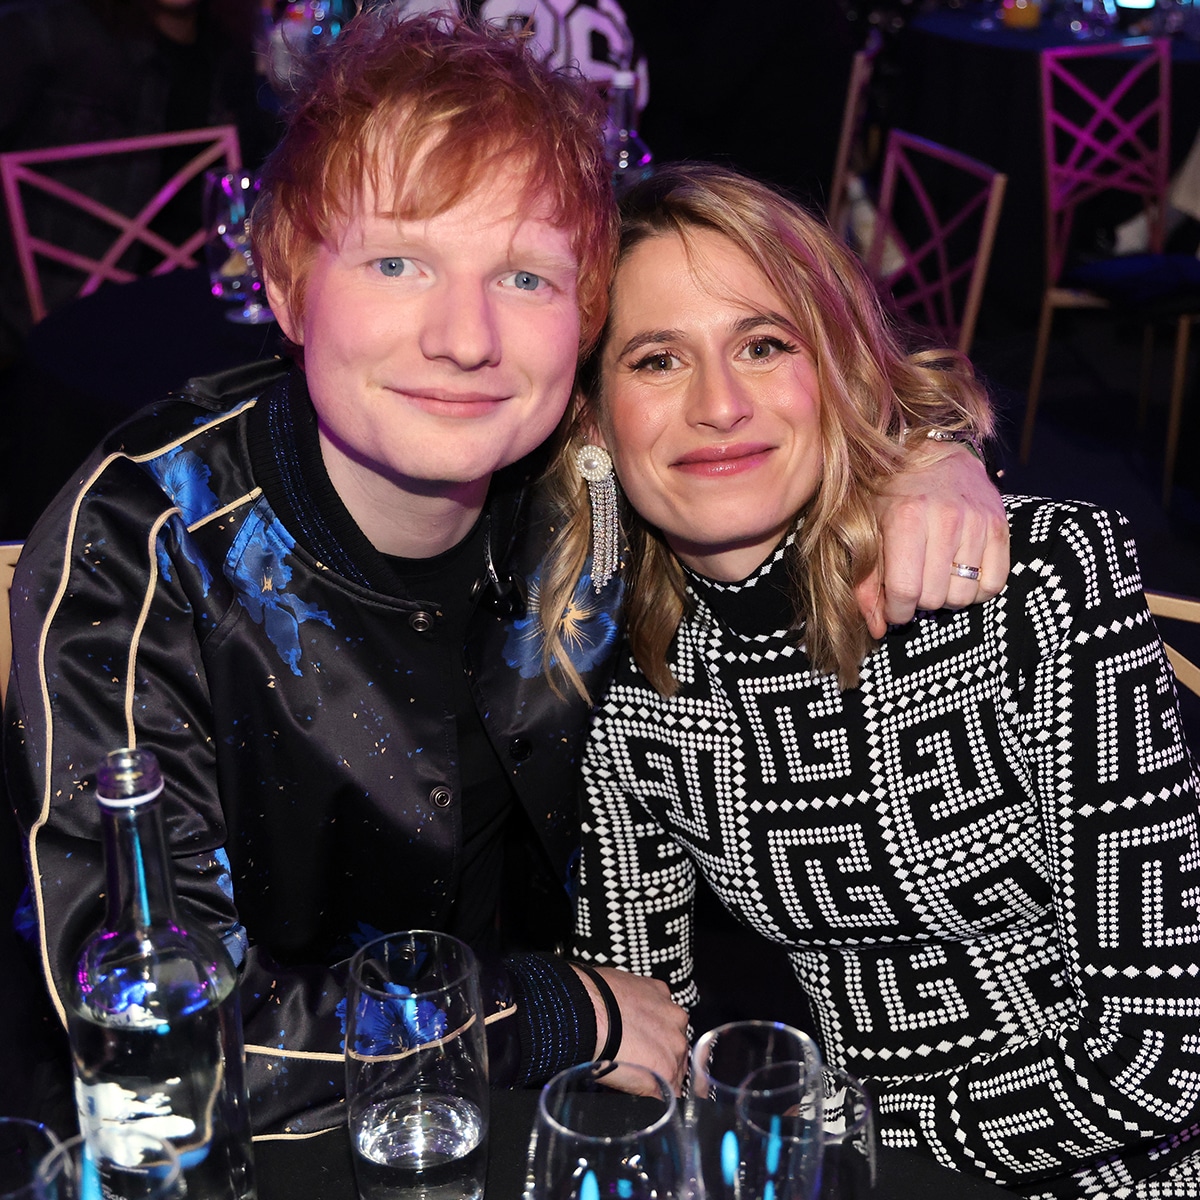 Ed sheeran with his wife